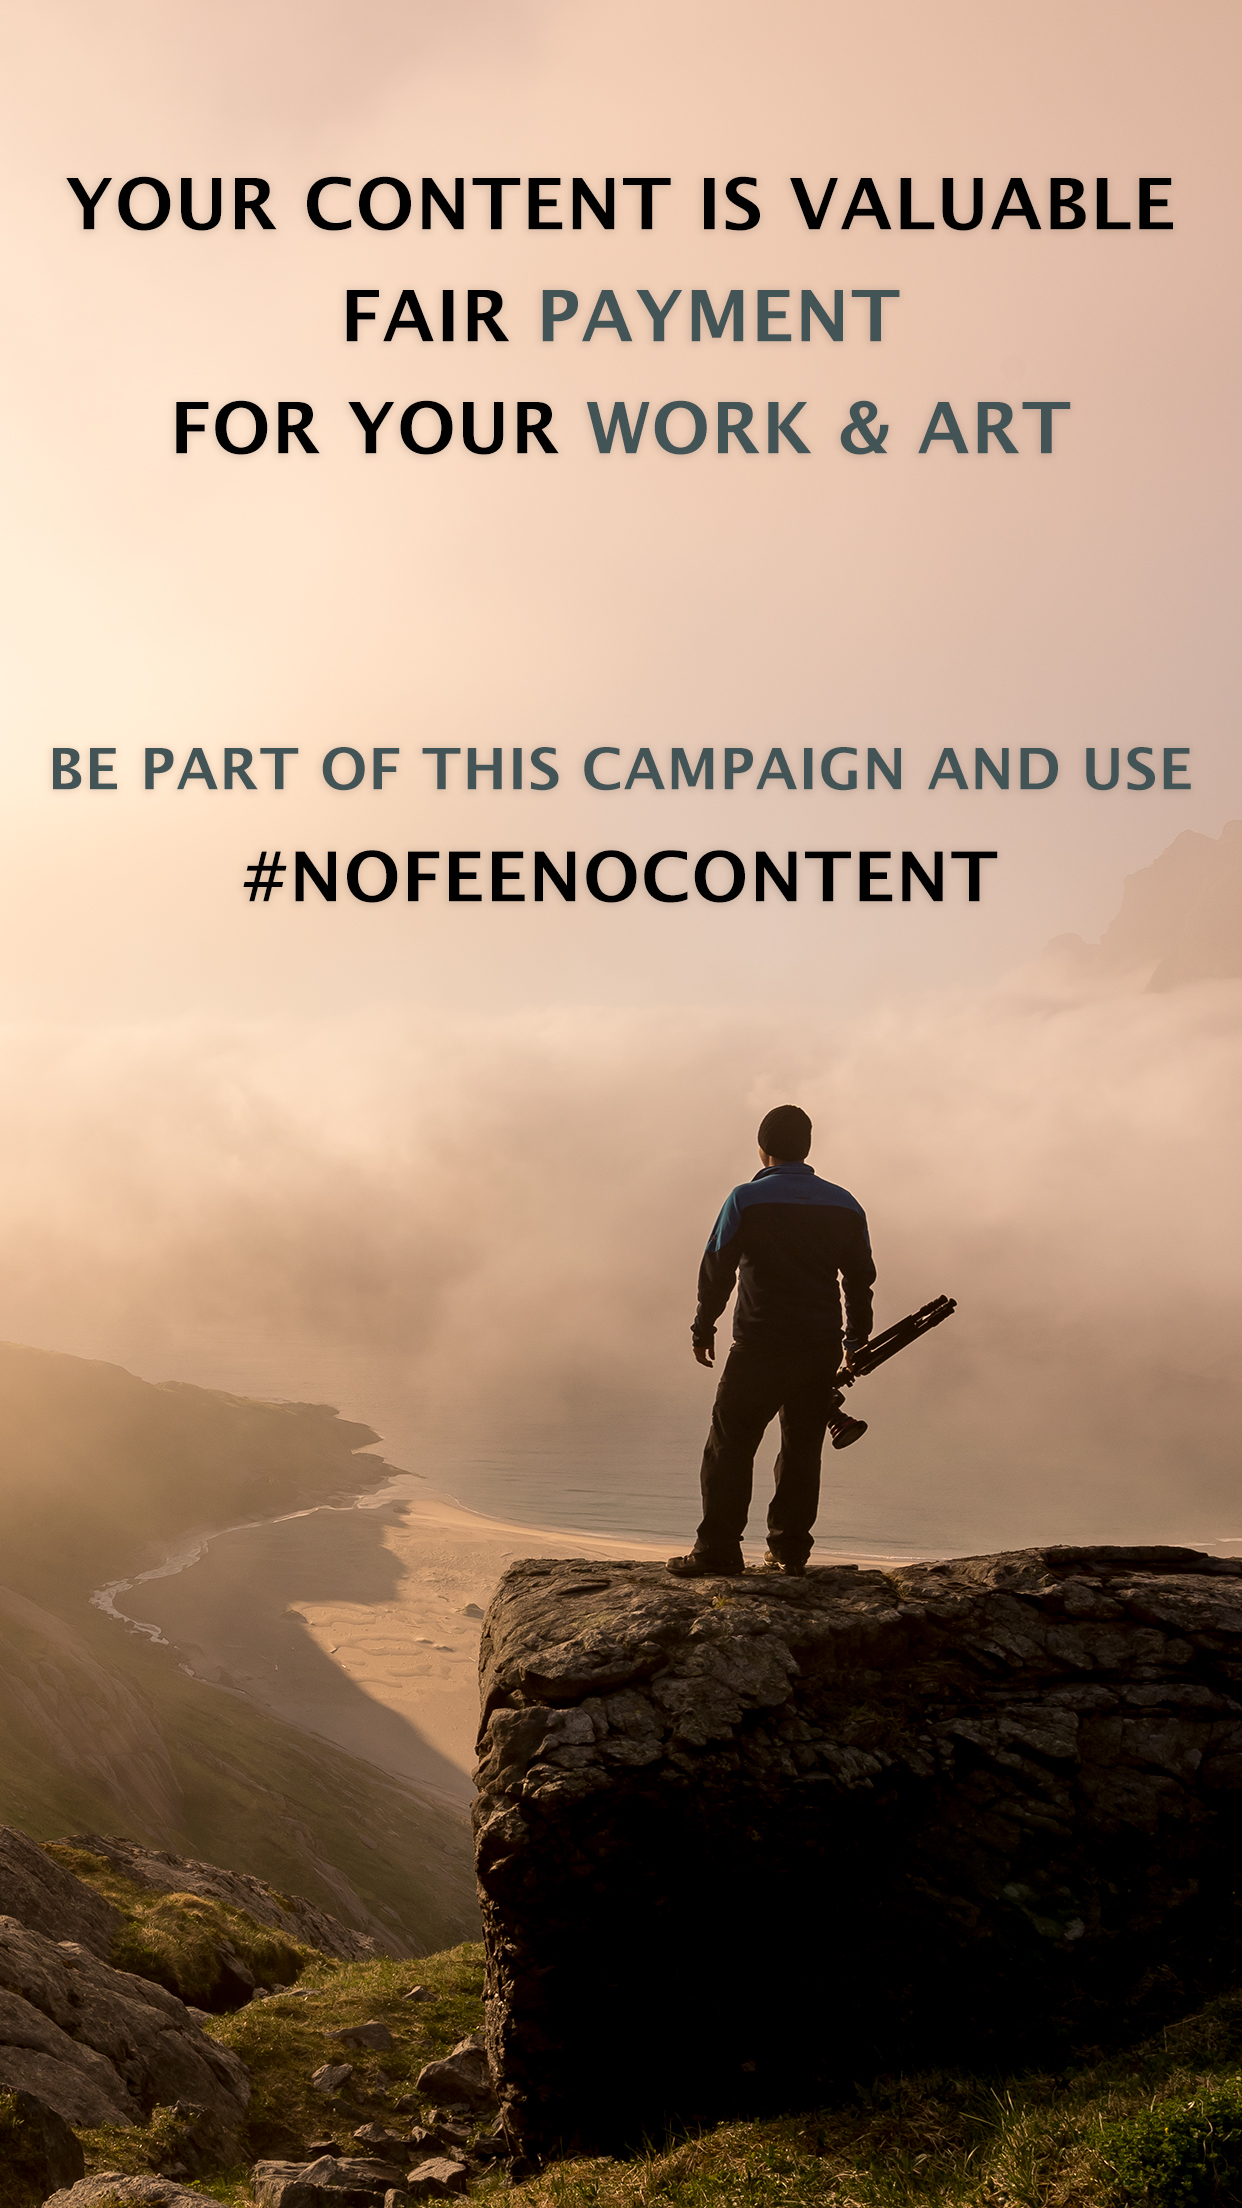 #nofeenocontent